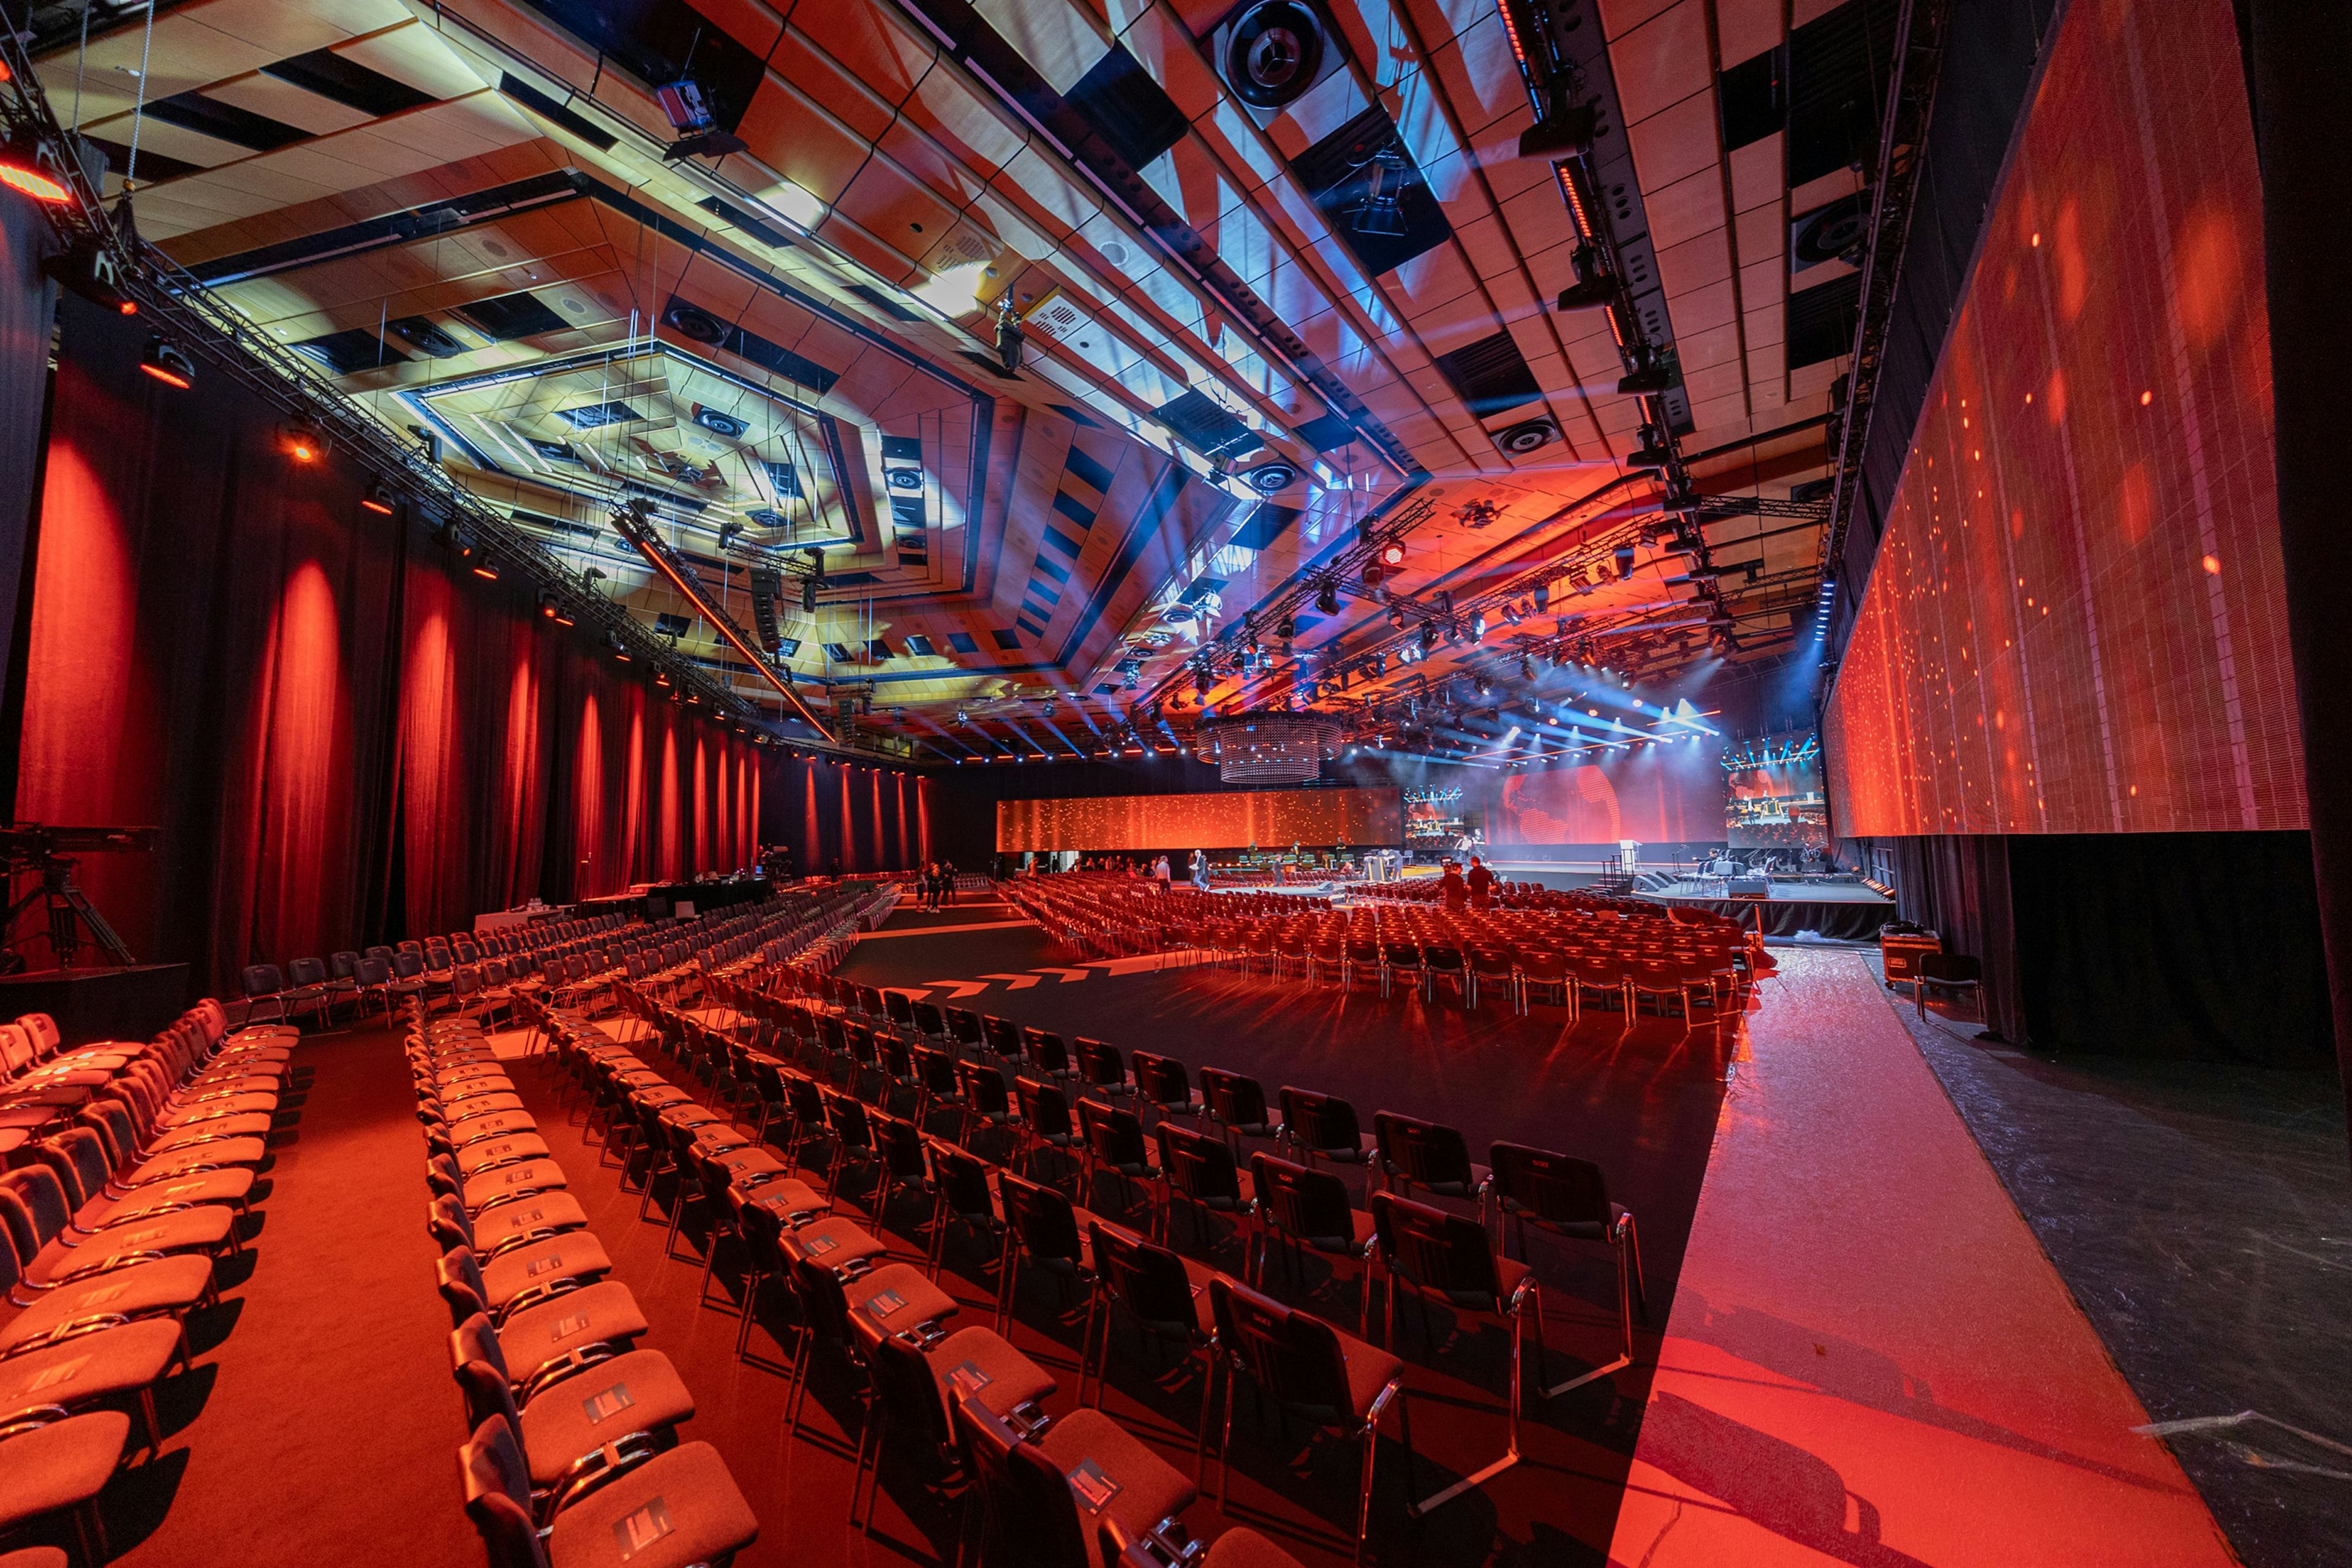 Saal A im Austria Center Vienna mit Buehne und roten Teppich in roter Beleuchtung.